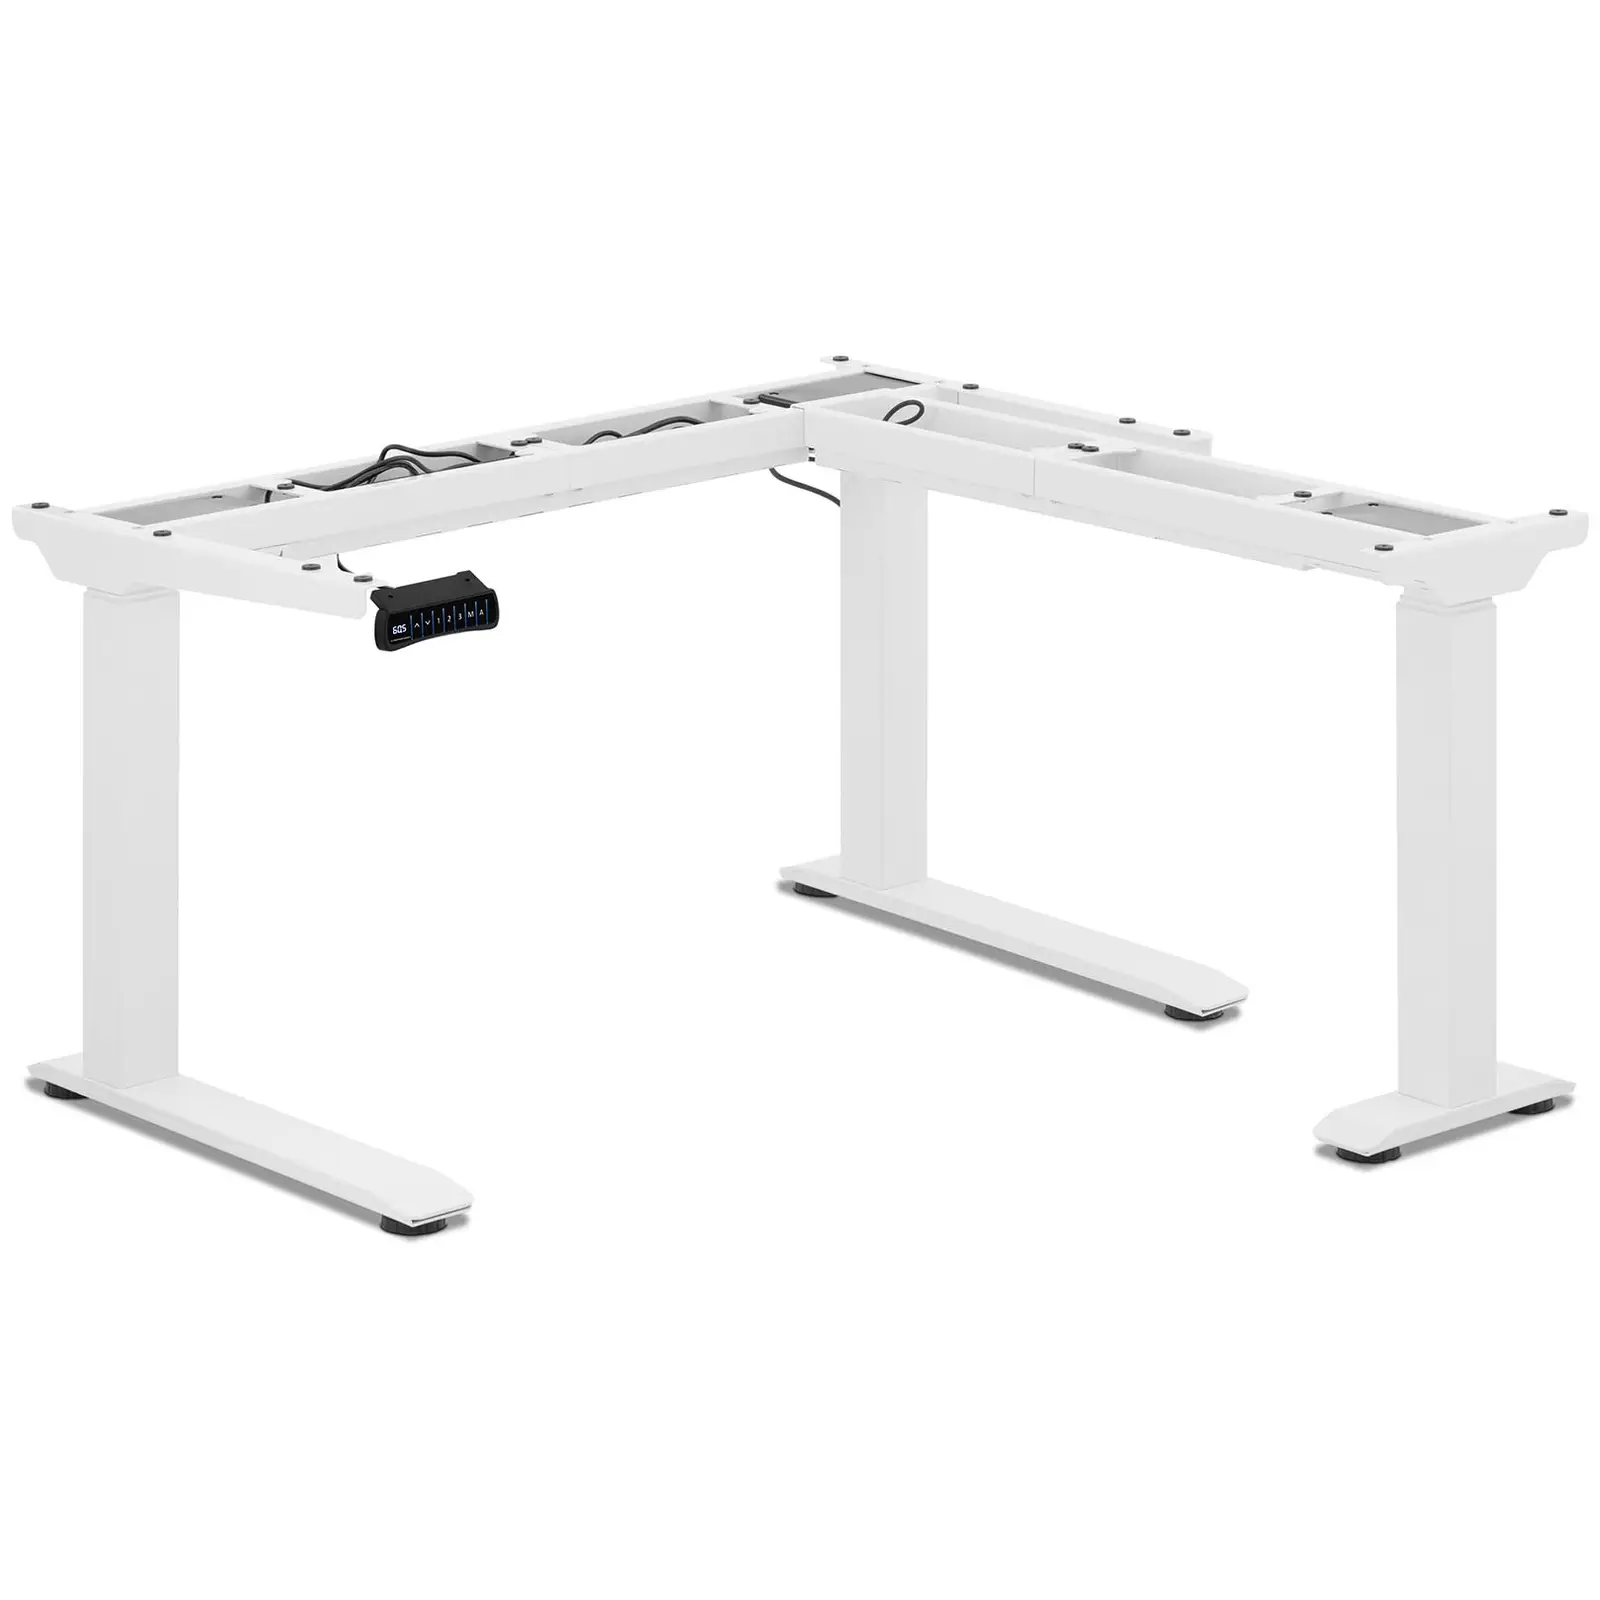 Állítható magasságú sarok asztal keret - magasság: 60–125 cm - szélesség: 110–190 cm (bal) / 90–150 cm (jobb)